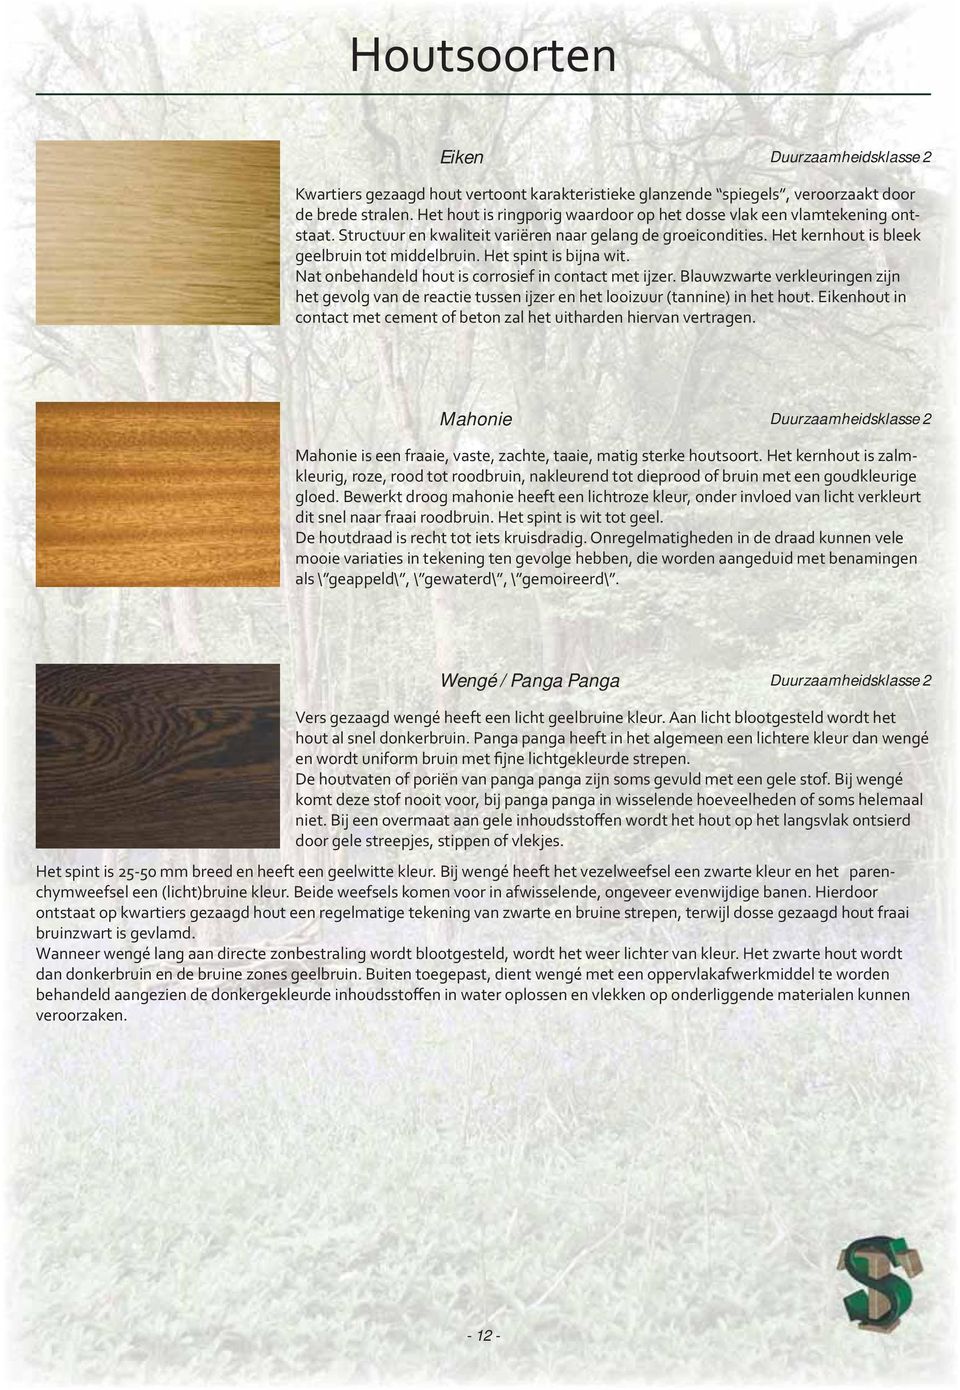 Het spint is bijna wit. Nat onbehandeld hout is corrosief in contact met ijzer. Blauwzwarte verkleuringen zijn het gevolg van de reactie tussen ijzer en het looizuur (tannine) in het hout.